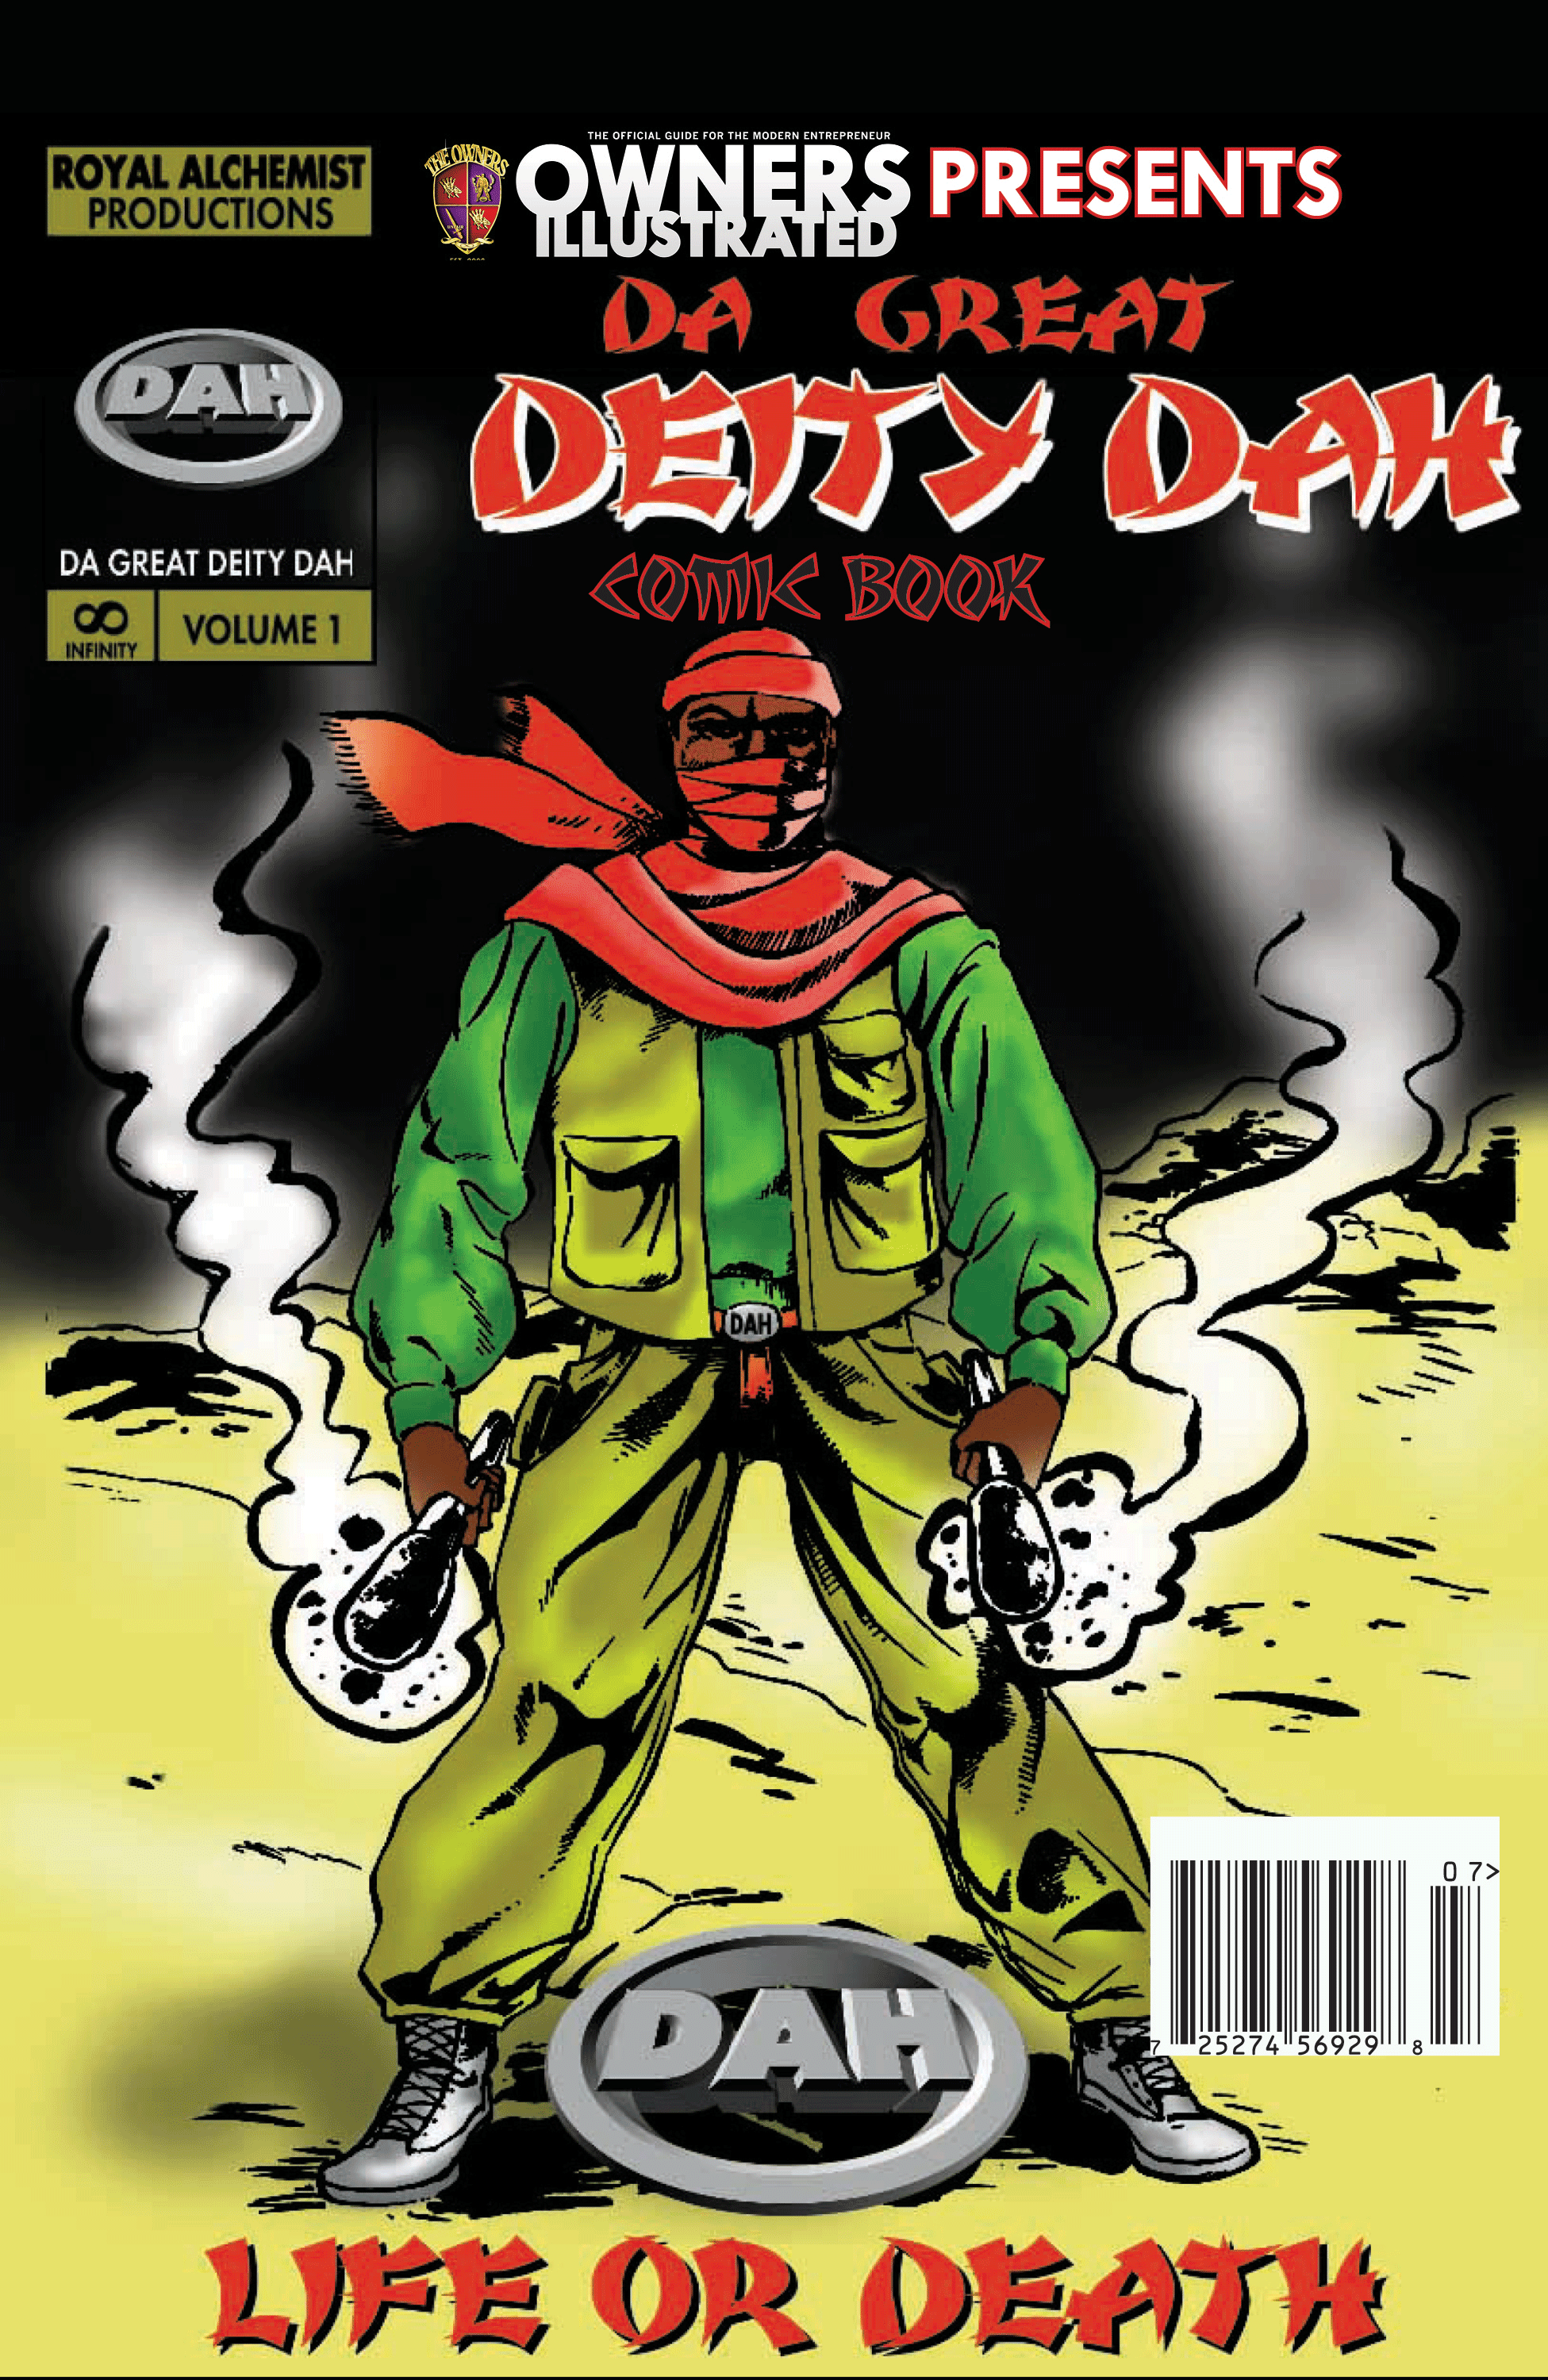 Da-Great-Deity-Dah--comic-book-cvr-web